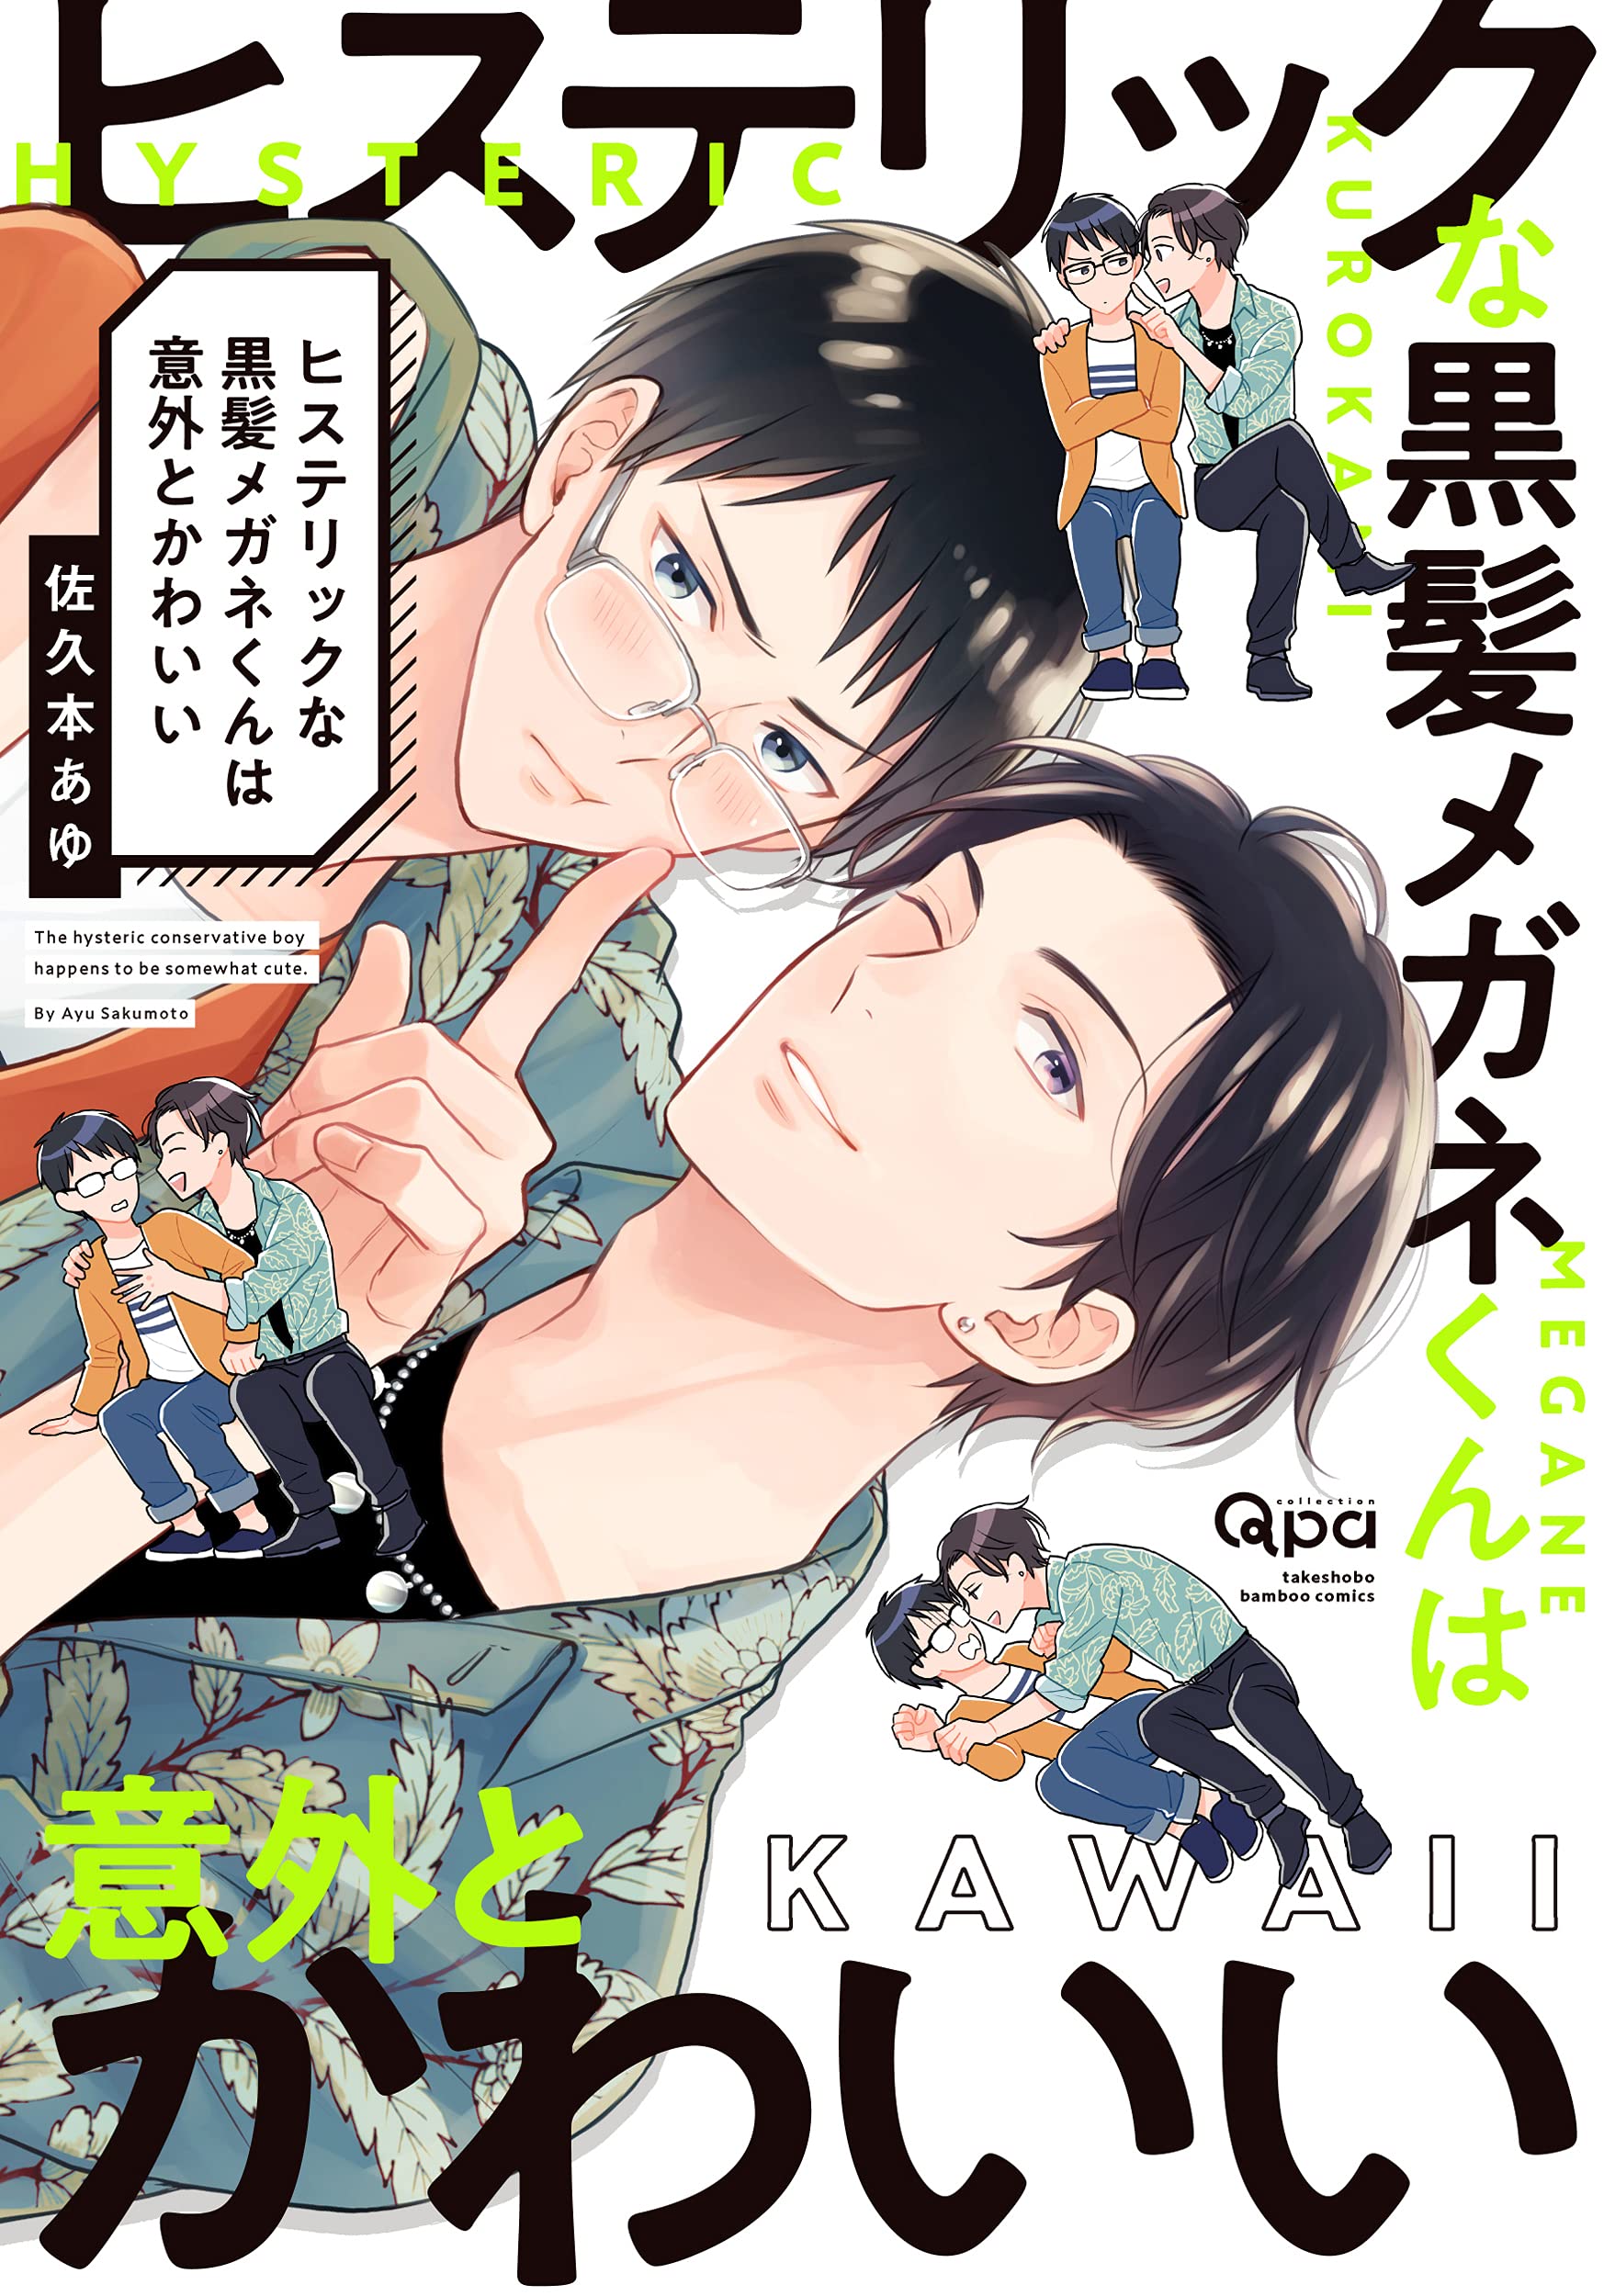 Boys Love (Yaoi) Comics - Hysterical na Kurokami Megane-kun wa Igai to Kawaii (ヒステリックな黒髪メガネくんは意外とかわいい (バンブー・コミックス Qpa collection)) / Sakumoto Ayu